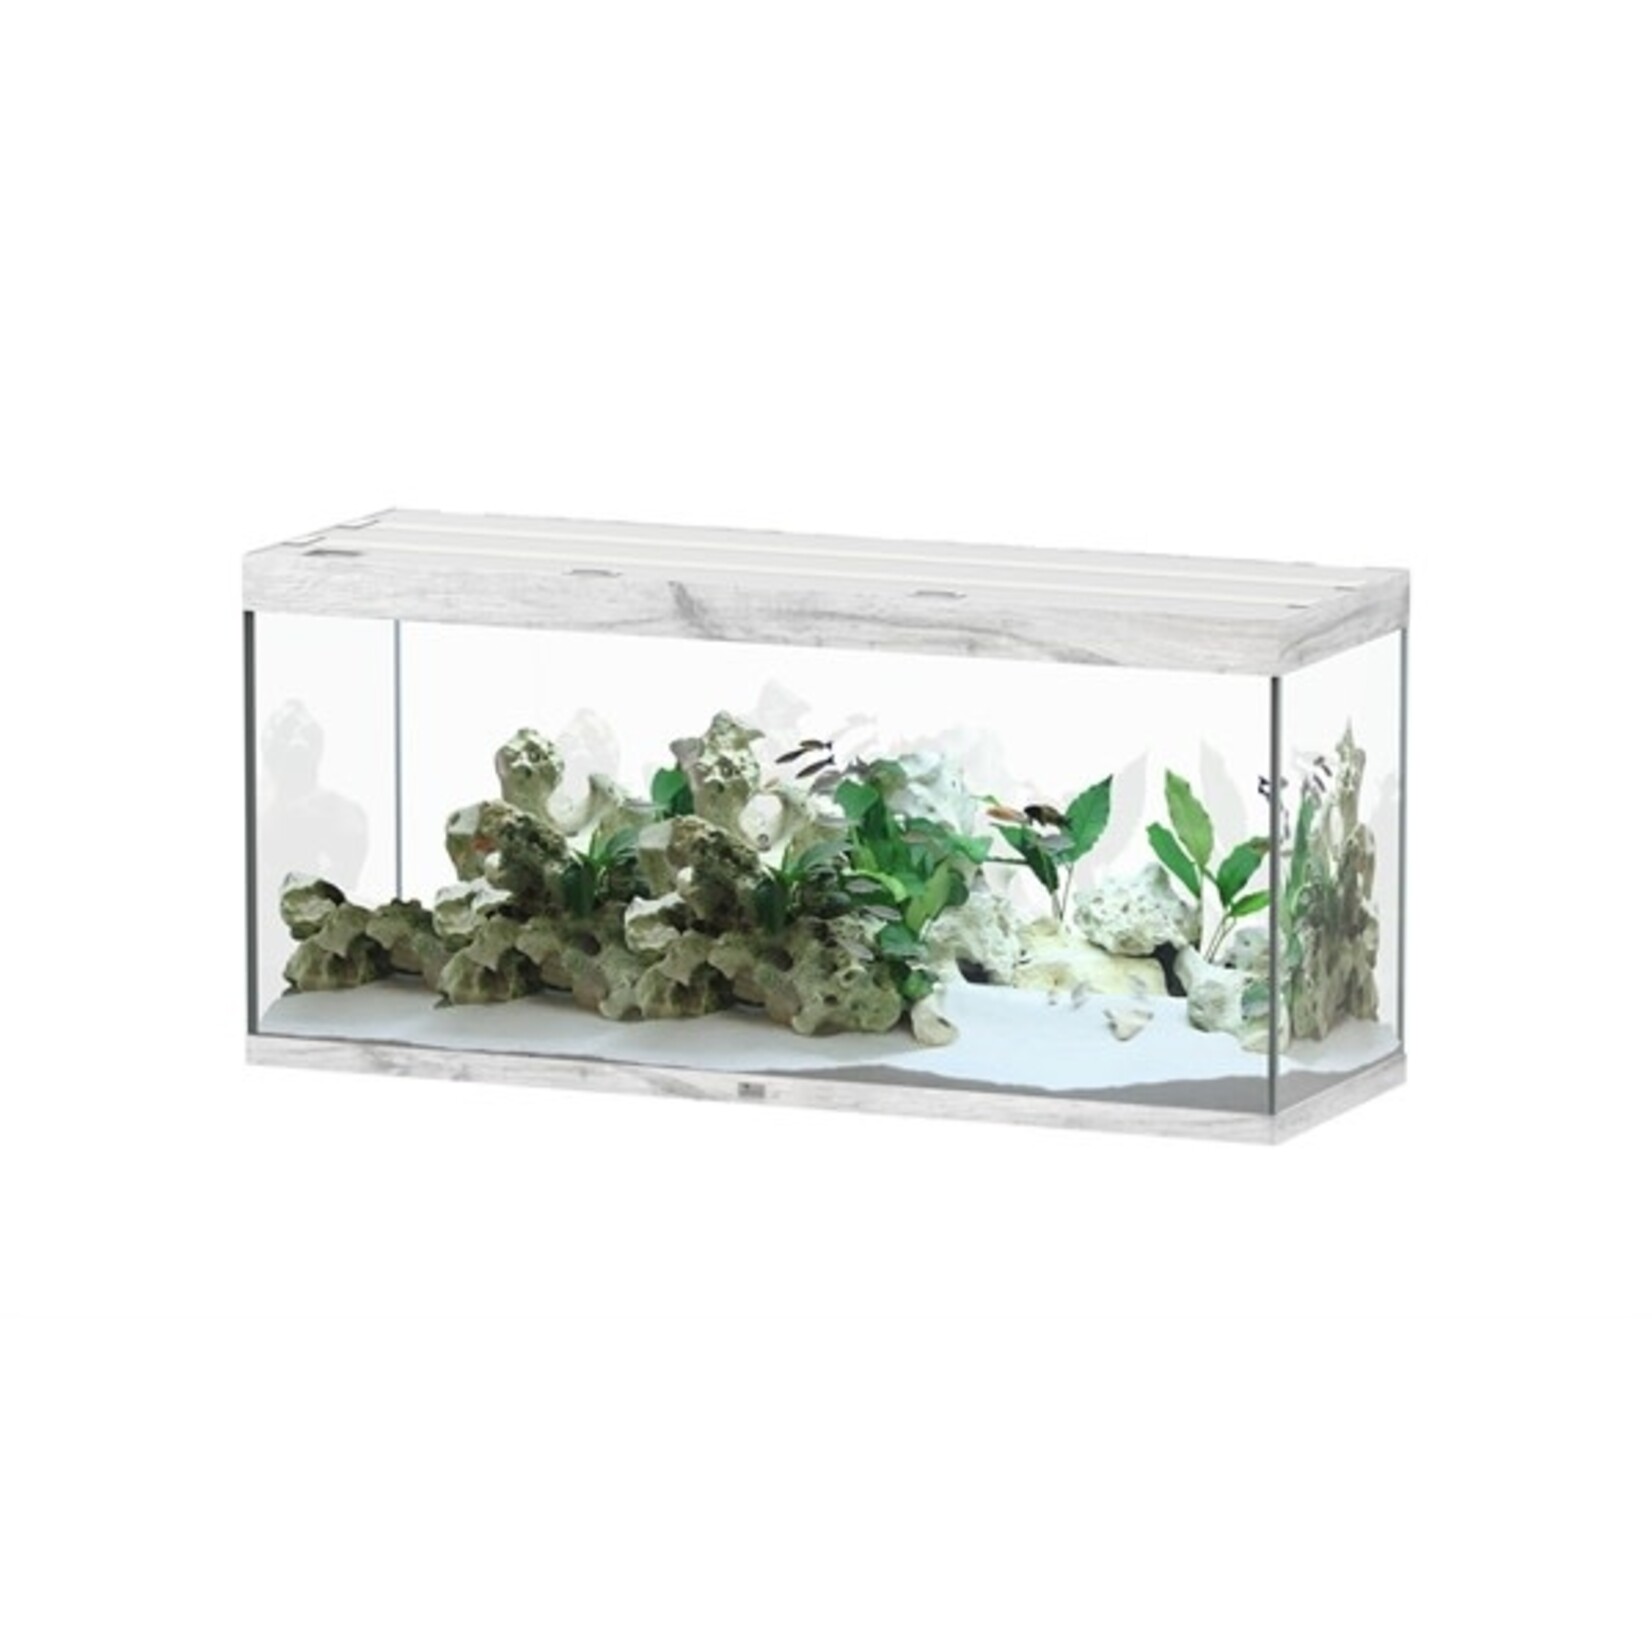 Aquatlantis Aquarium sublime 150x50 cm whitewash-088